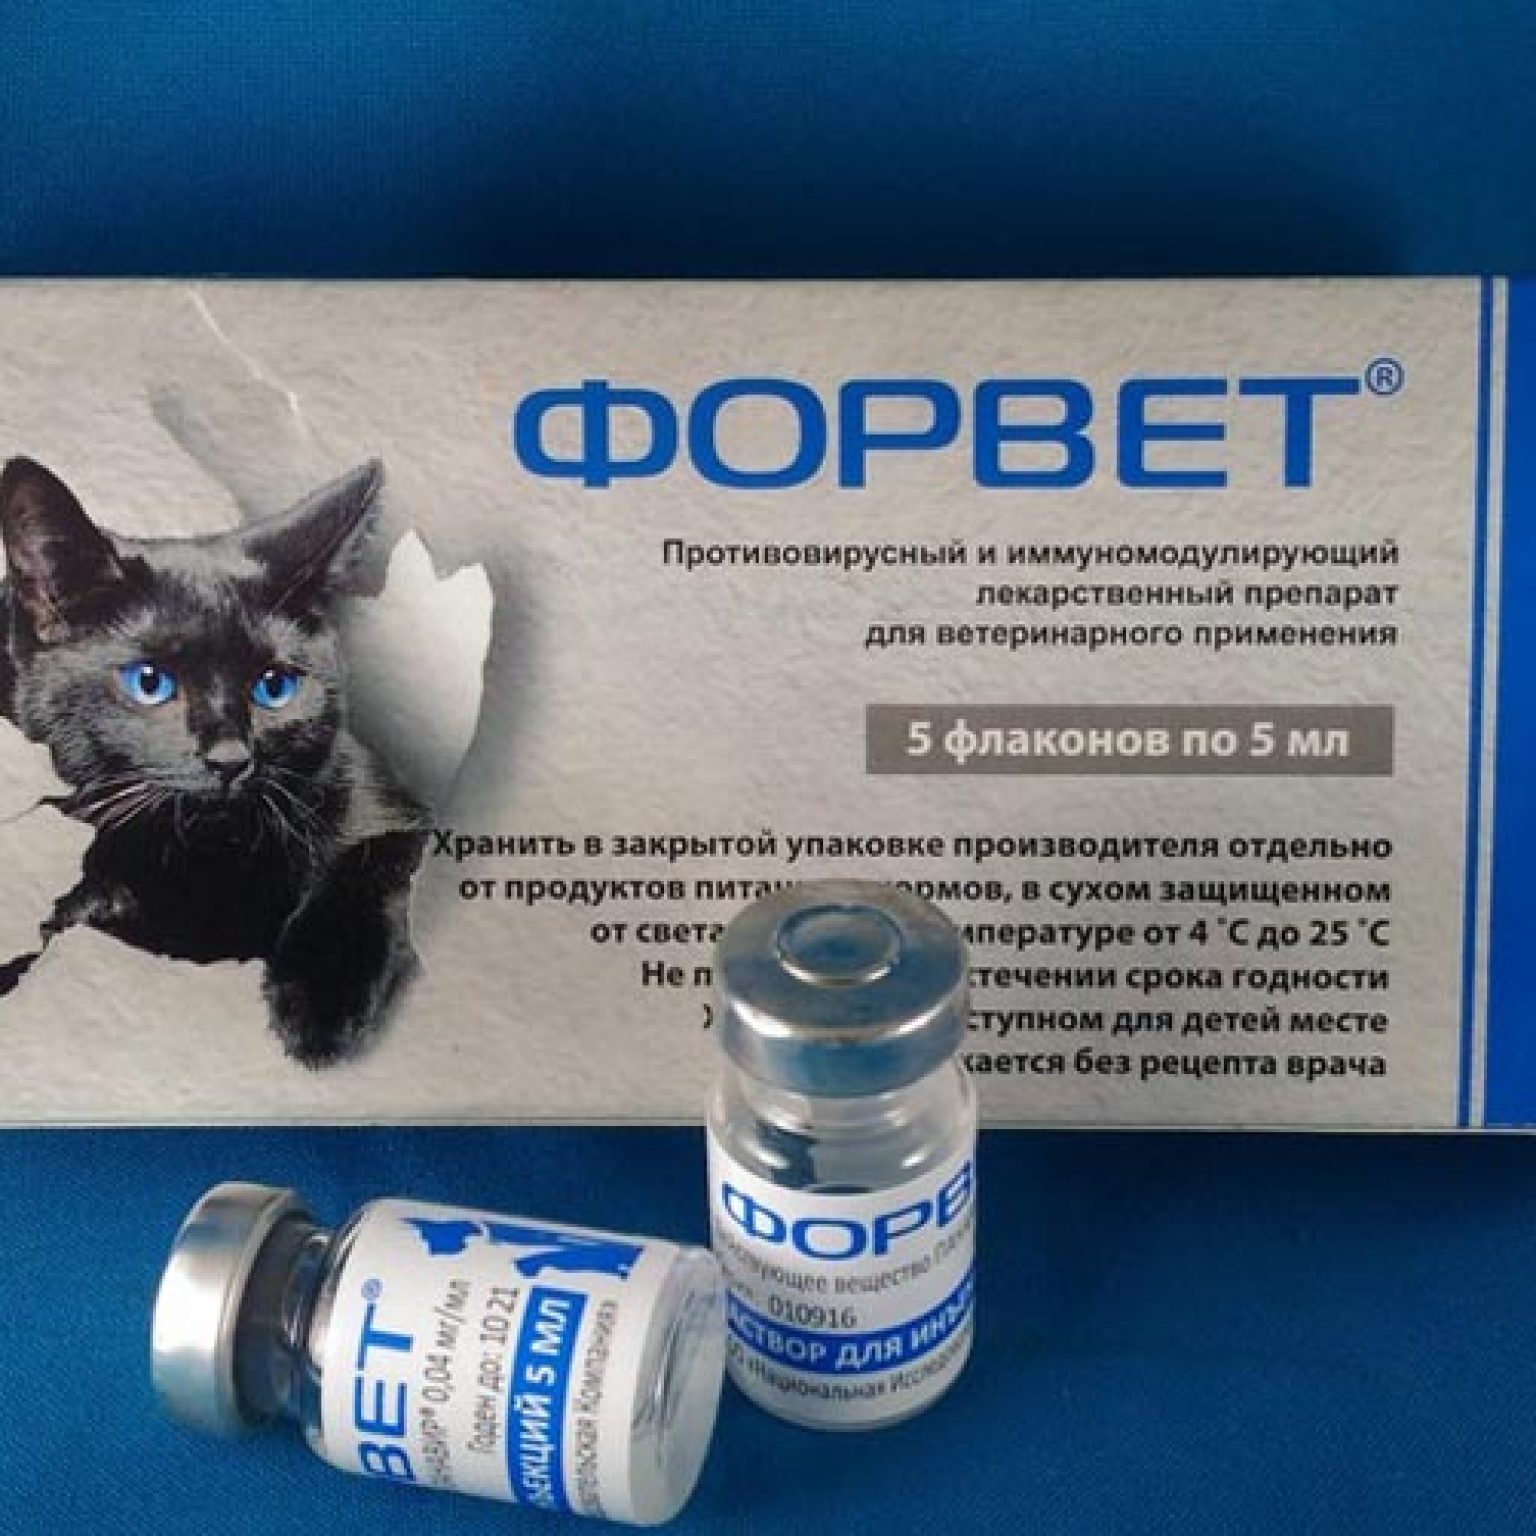 Какие таблетки можно давать котам. Форвет для кошек. Лекарственные средства для животных. Форвет инъекции. Противовирусные препараты для кошек.